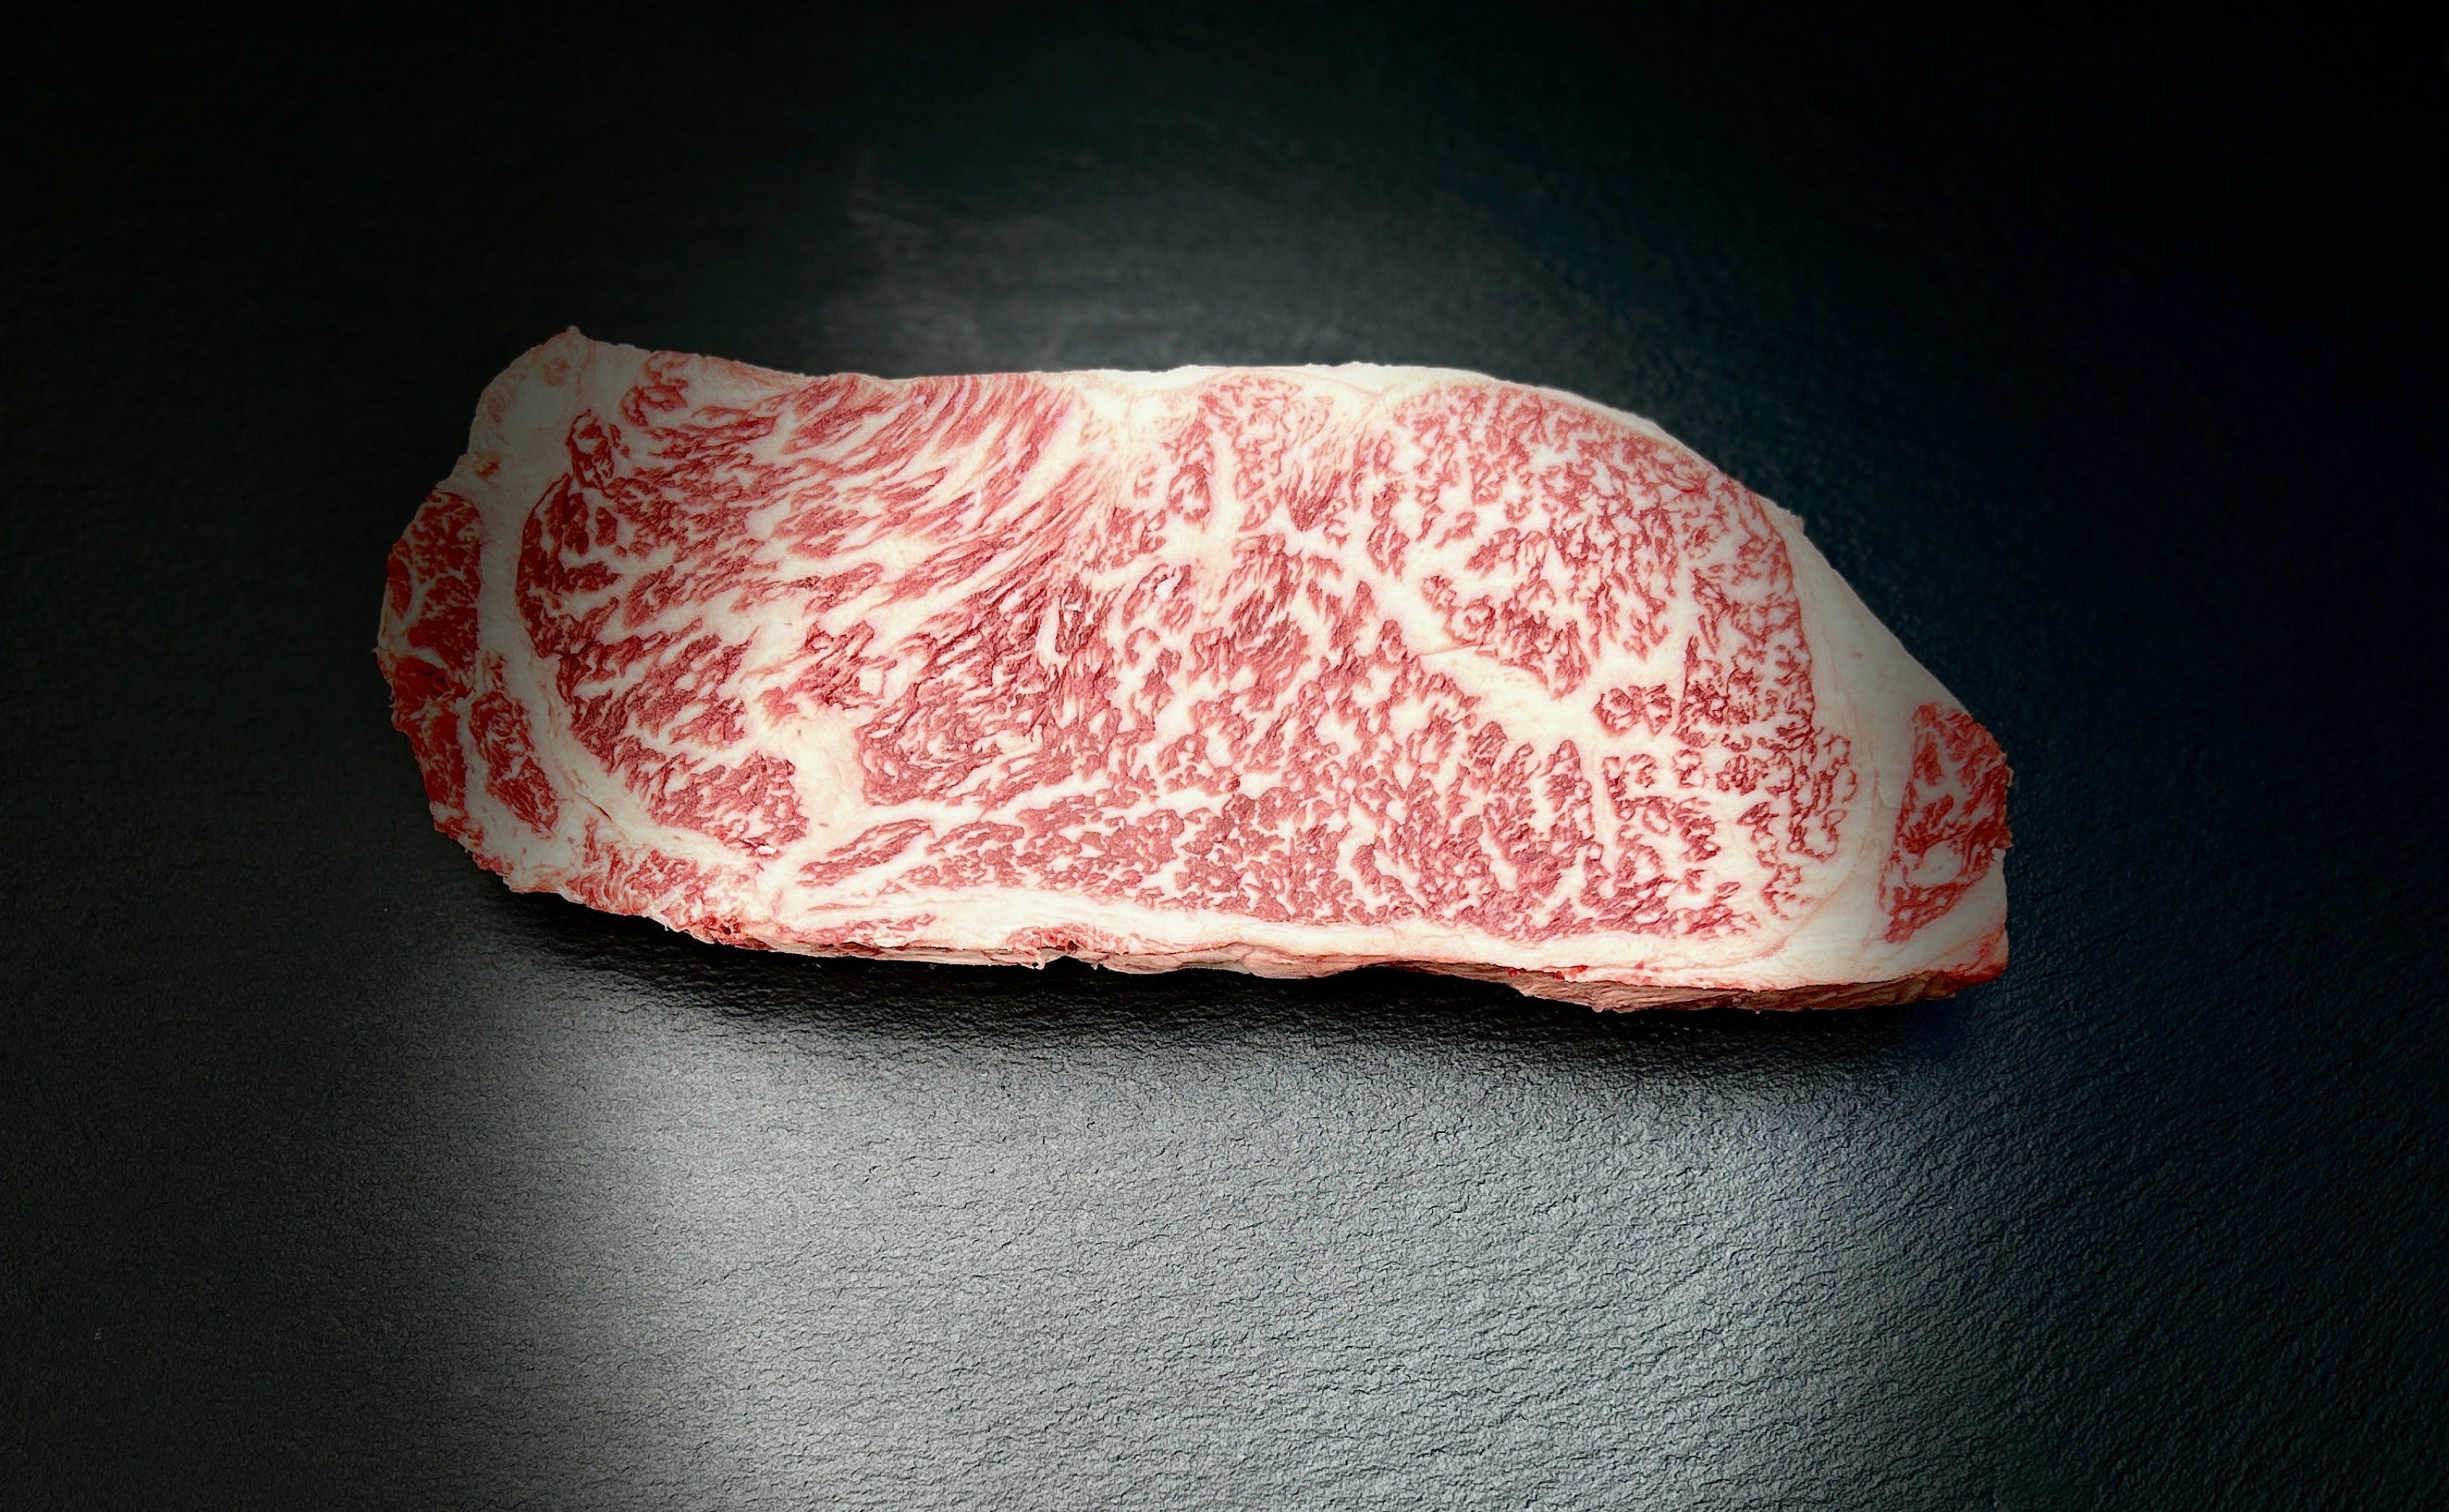 A4 Japanese Wagyu Striploin Steak